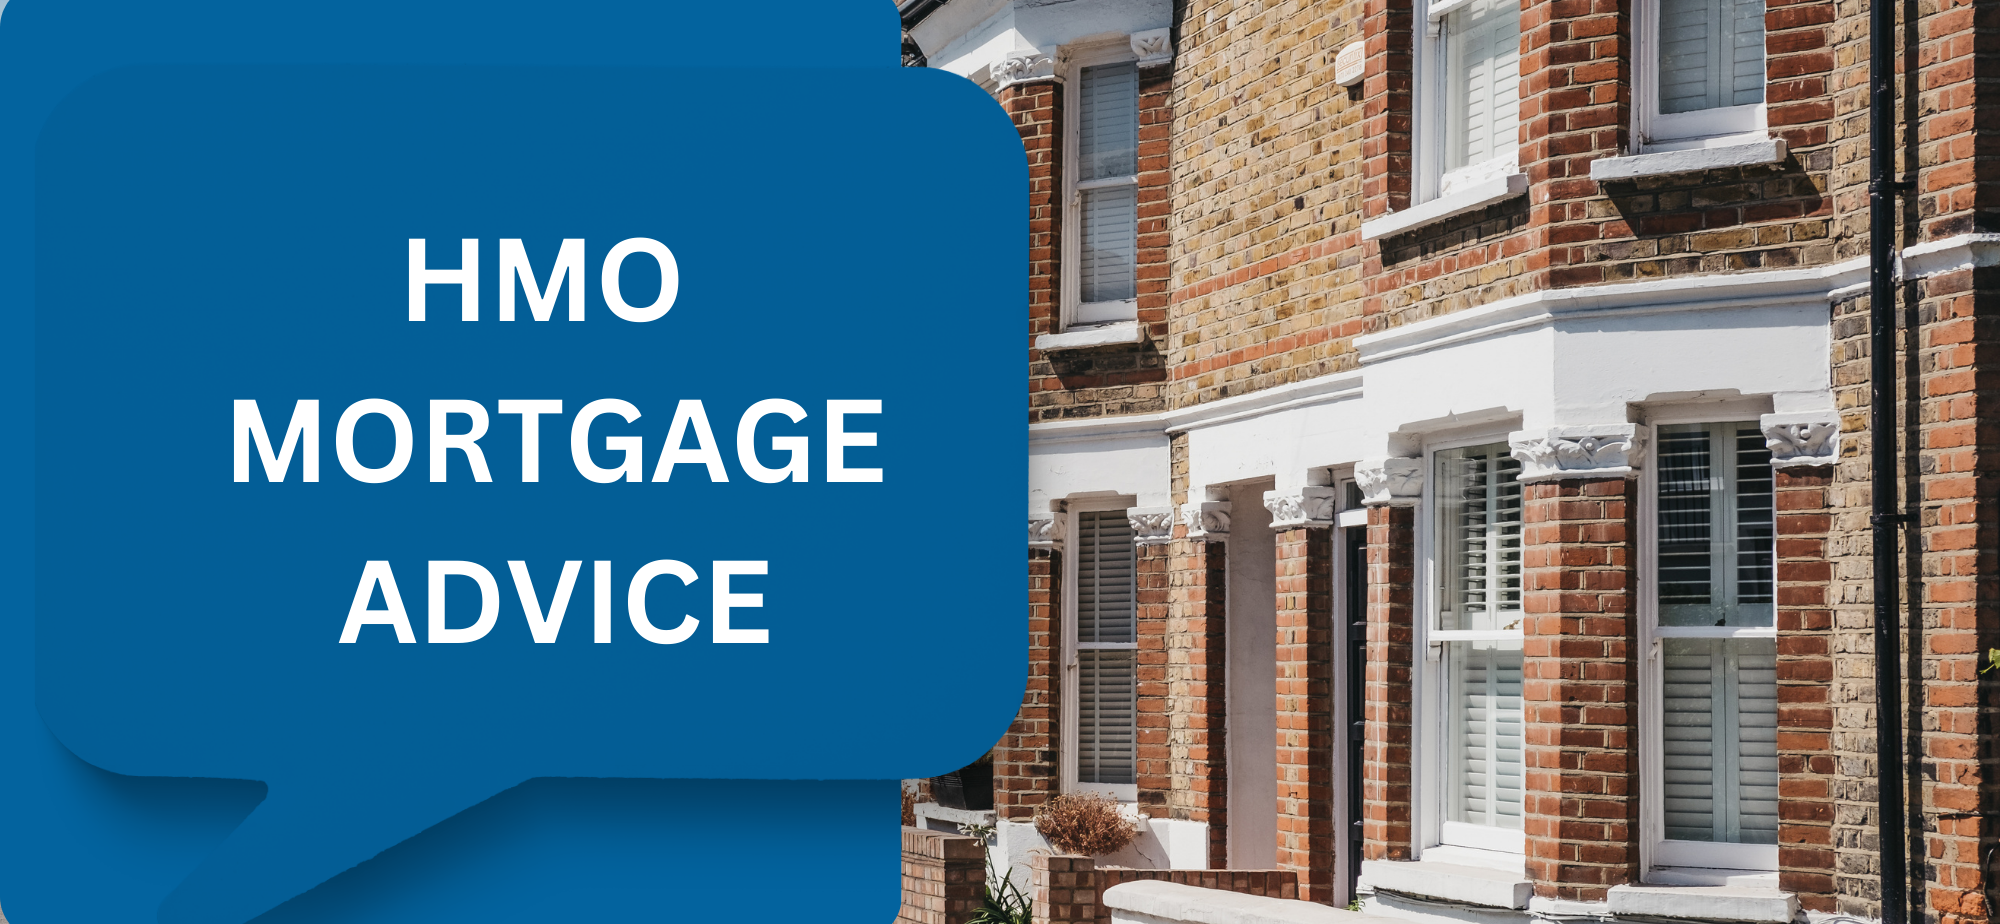 HMO Mortgage Advice